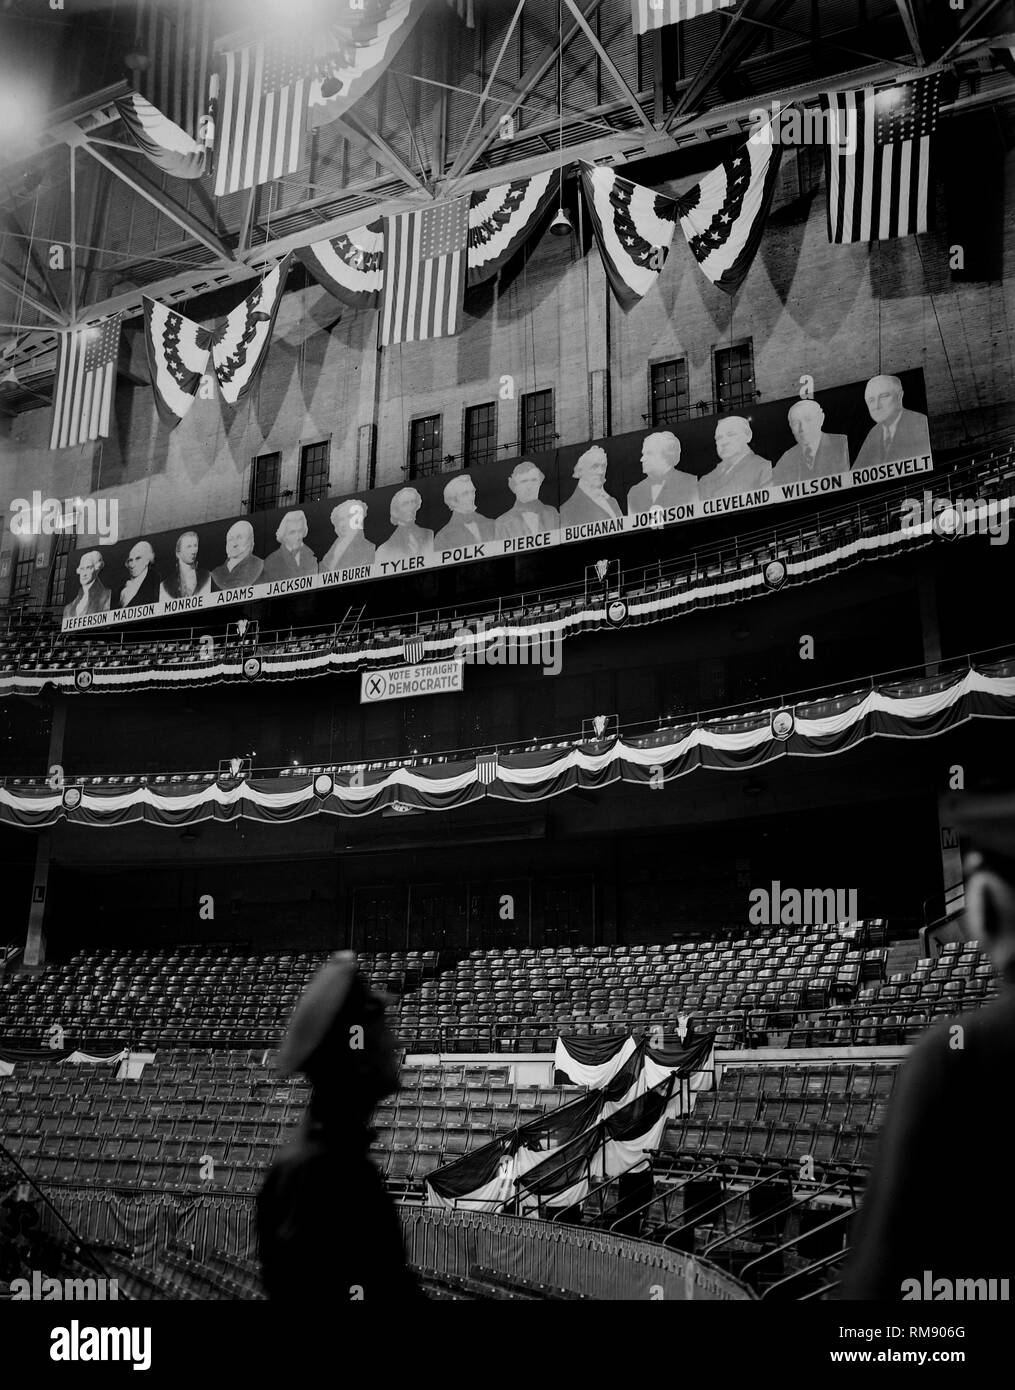 Une programmation de présidents démocratique regarder vers le bas des murs de la Chicago Stadium avant l'ouverture de la Convention Nationale Démocratique en 1944. Banque D'Images